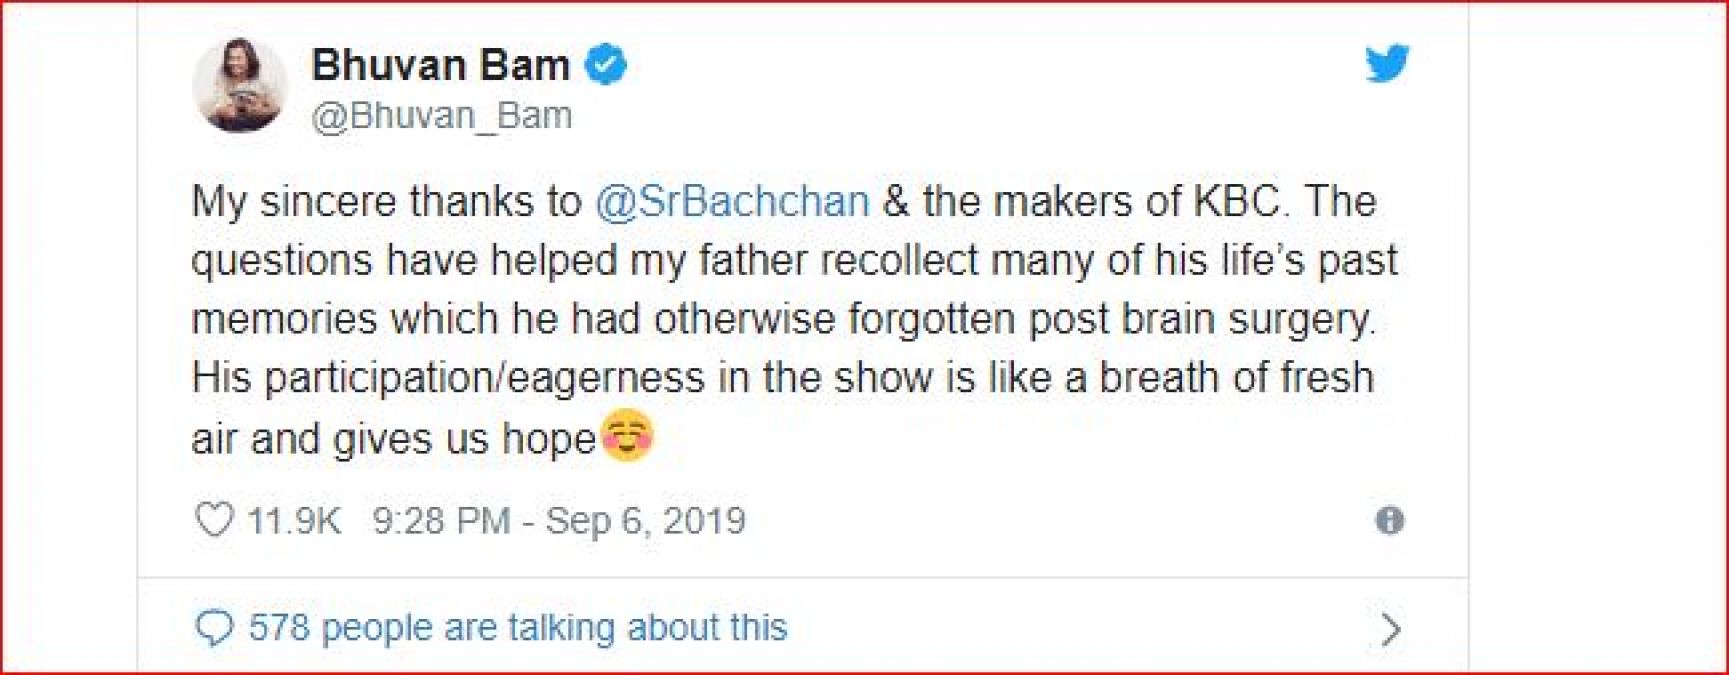 केबीसी के कारण वापस आई यूट्यूब स्टार भुवम बाम के पिता की याददाश्त, कहा शुक्रिया